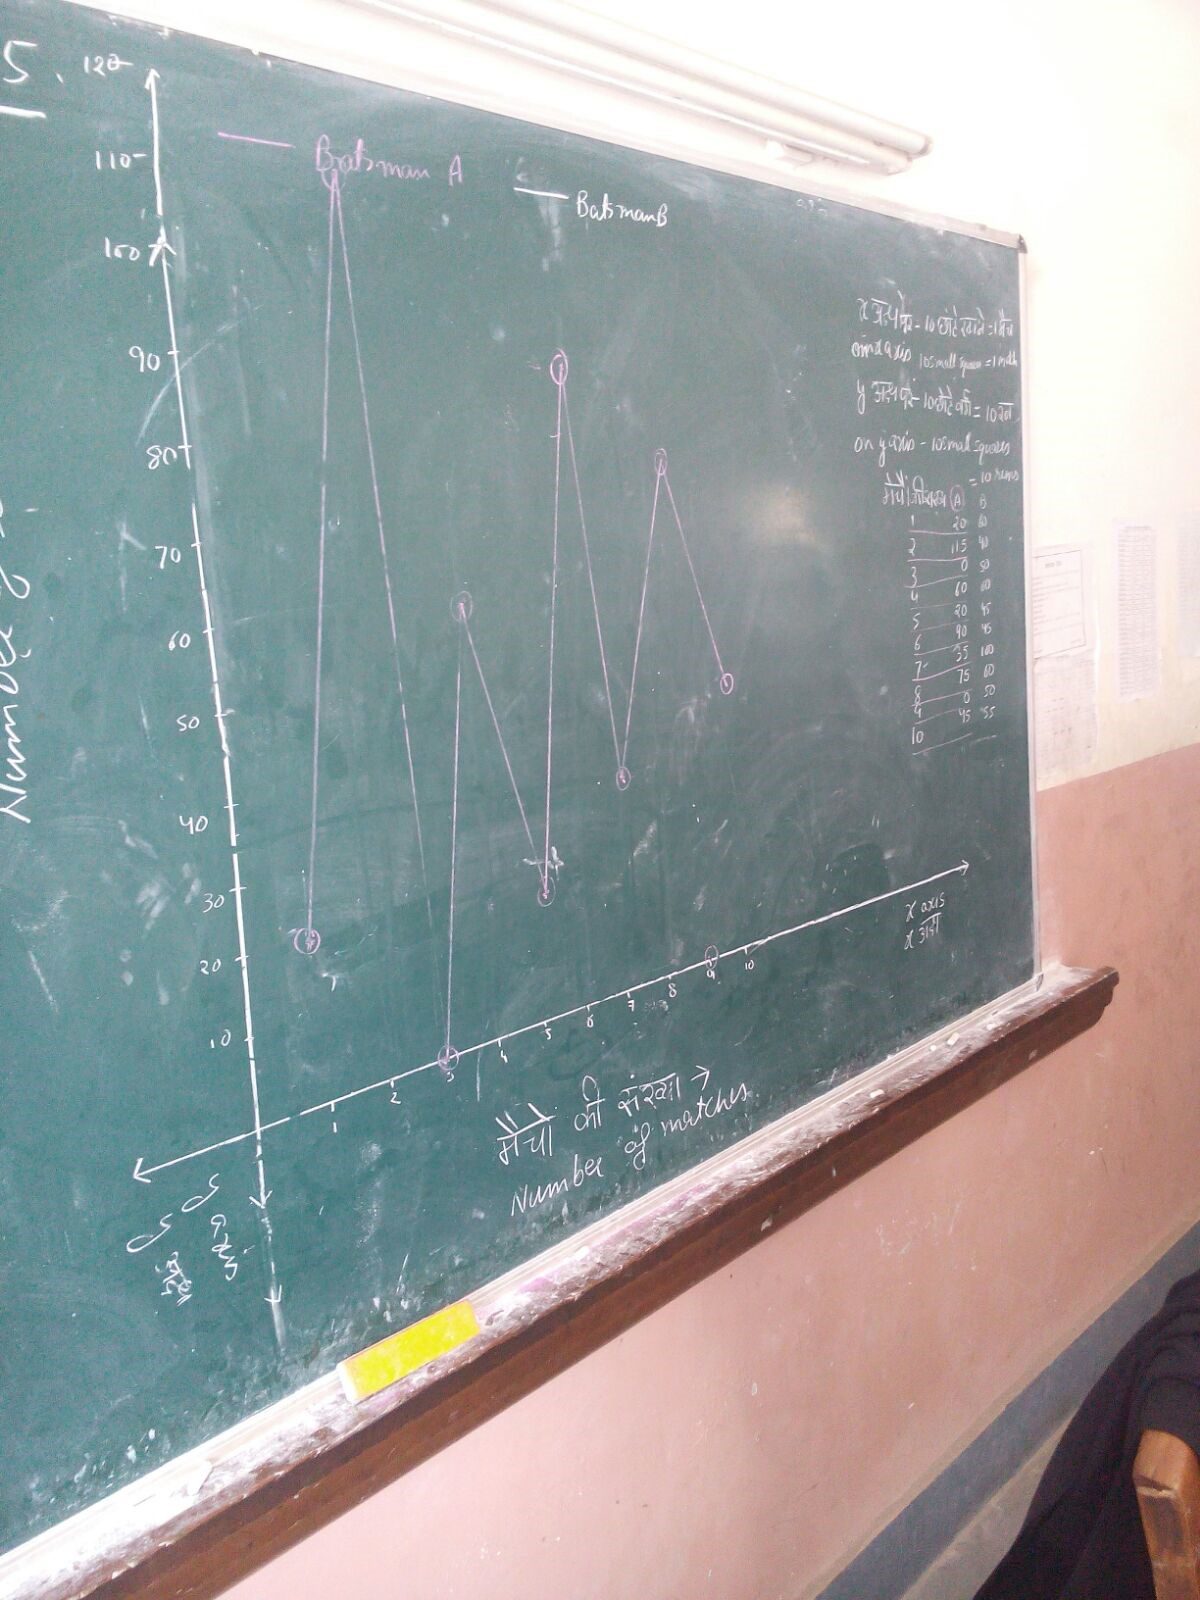 Blackboard showing a graph